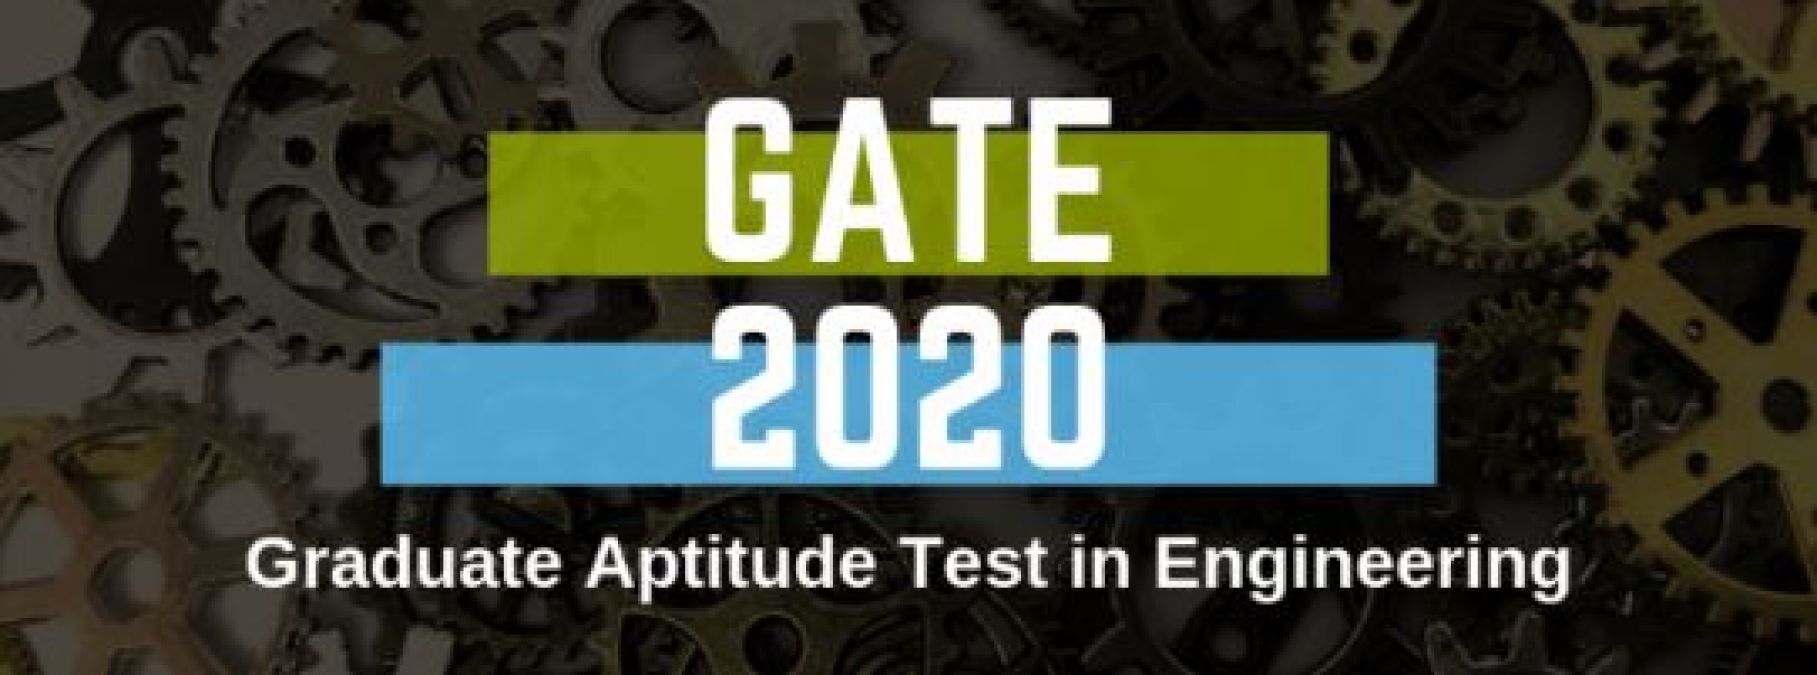 GATE 2020 के मॉक टेस्ट जारी, जानकारी के लिए यहाँ पढ़े